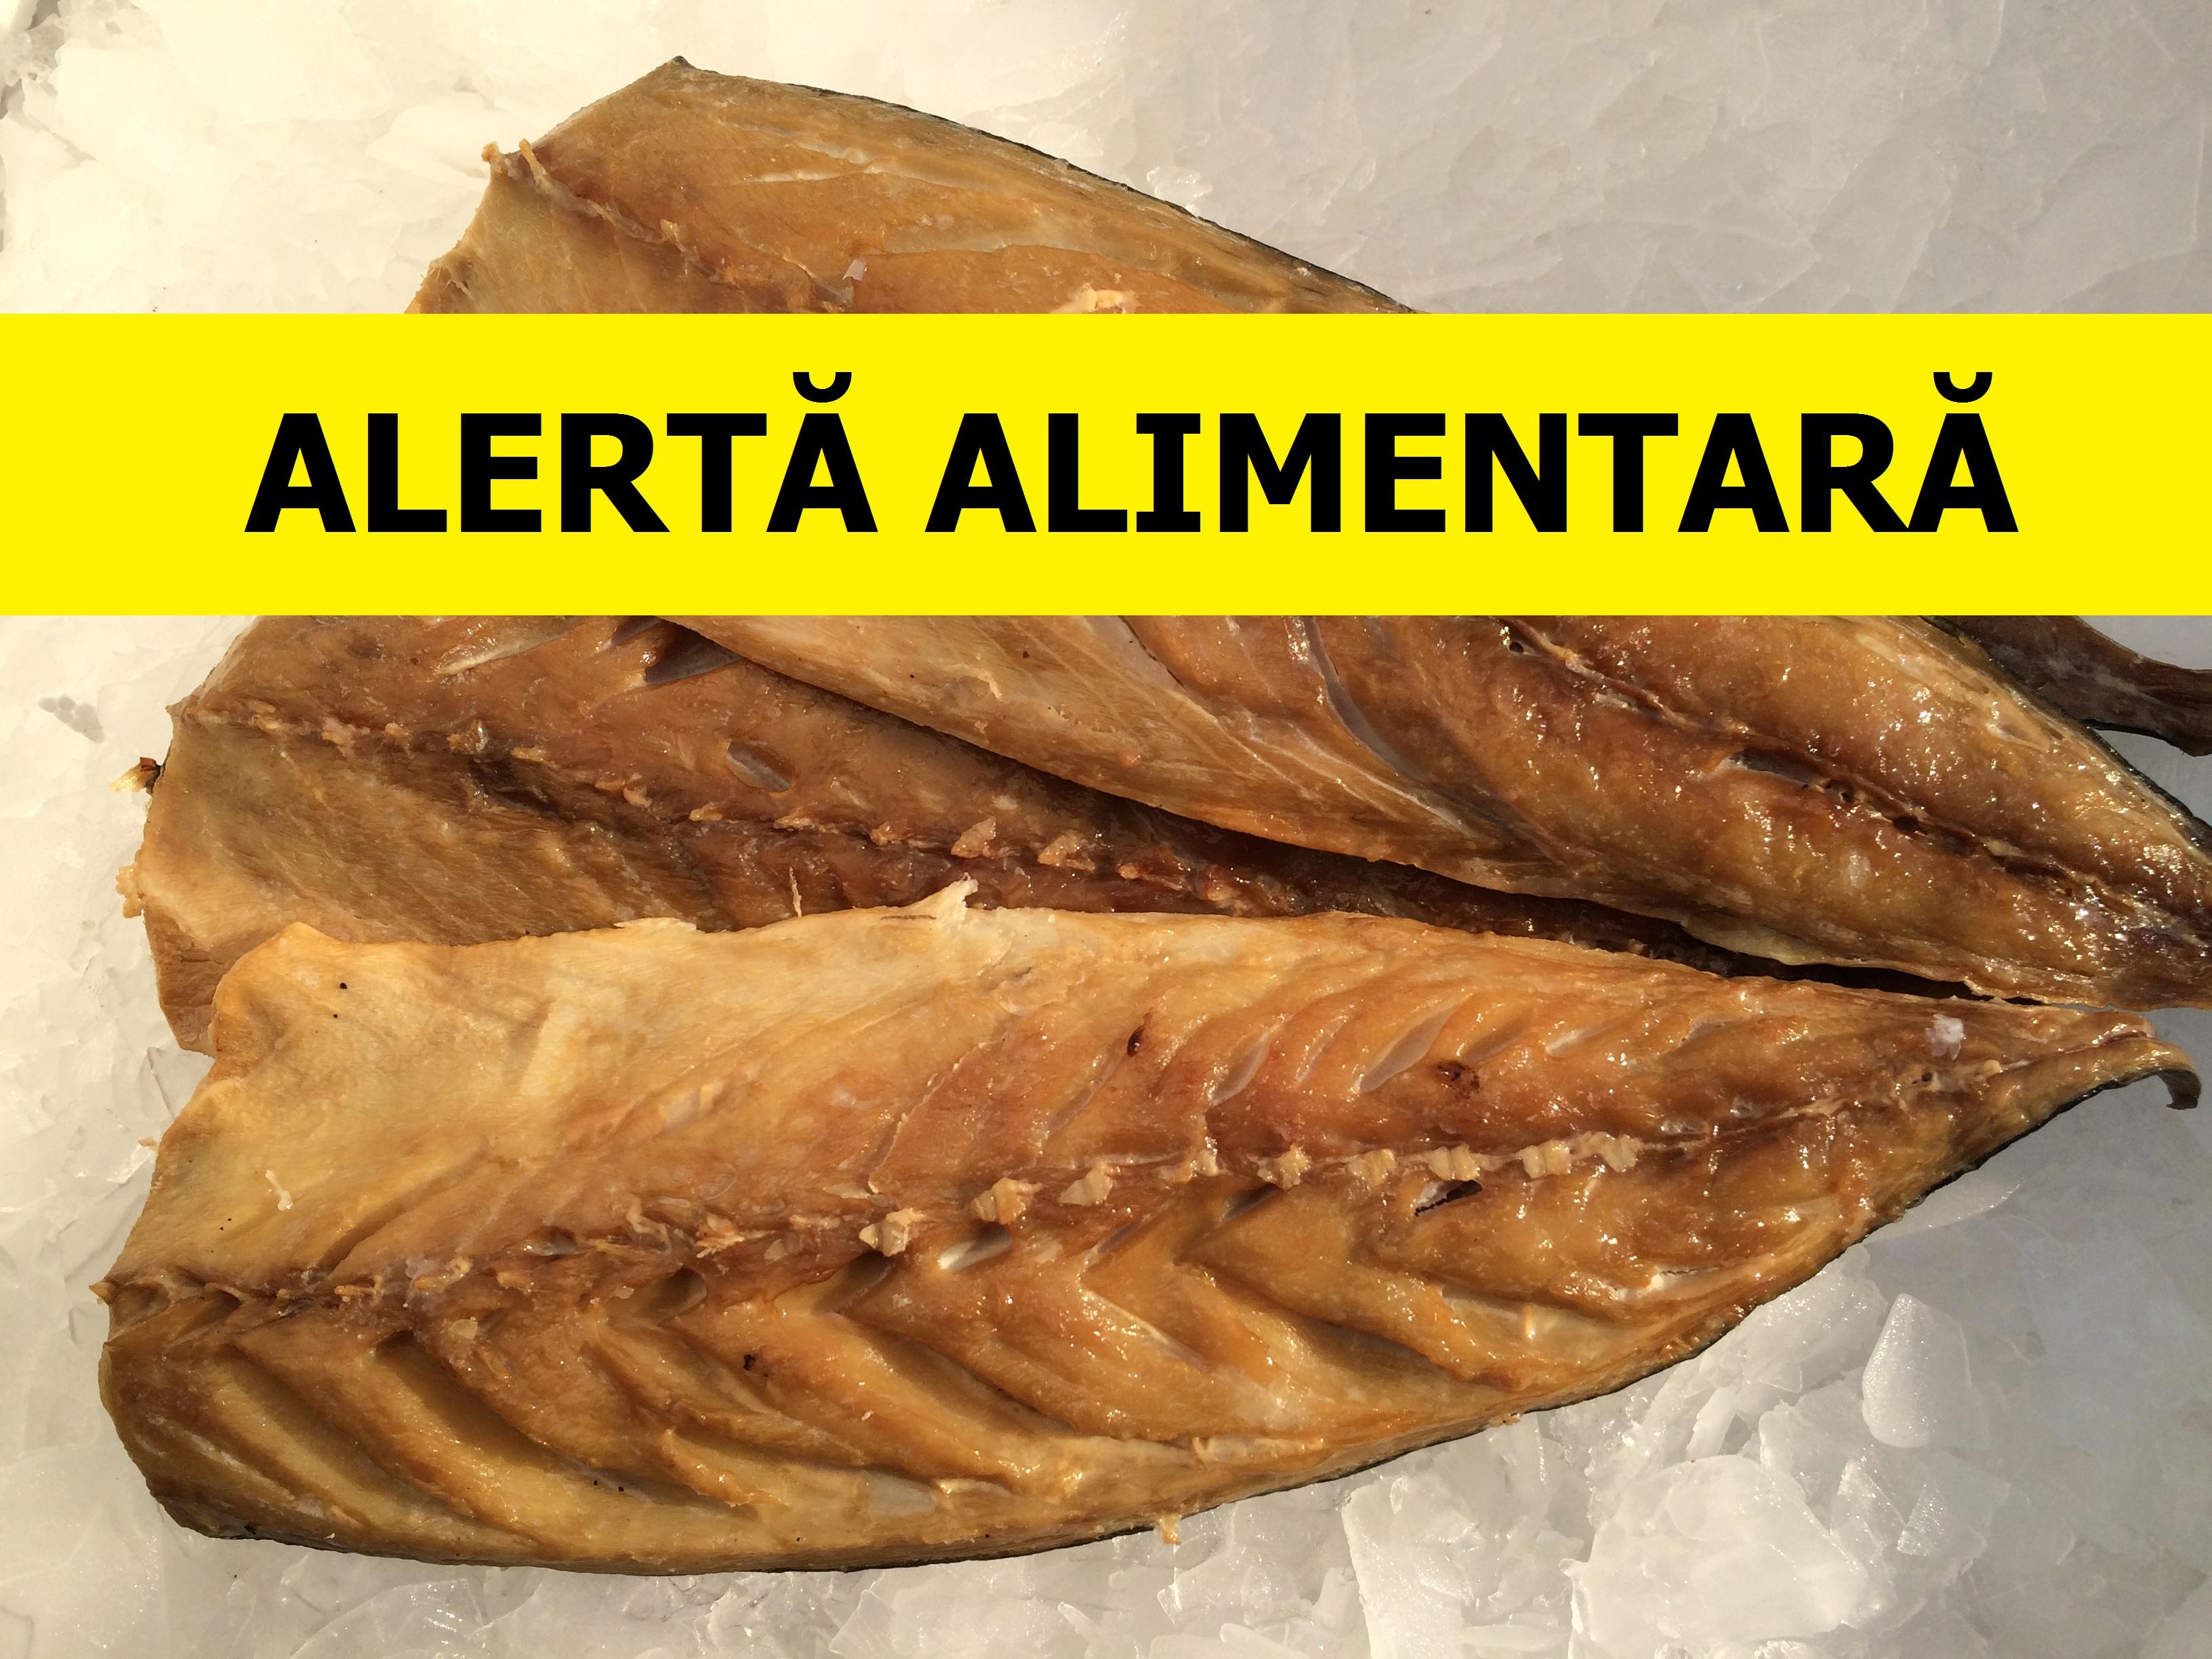 Alertă alimentară! Pește din România, de la o marcă celebră, infestat cu bacteria Listeria